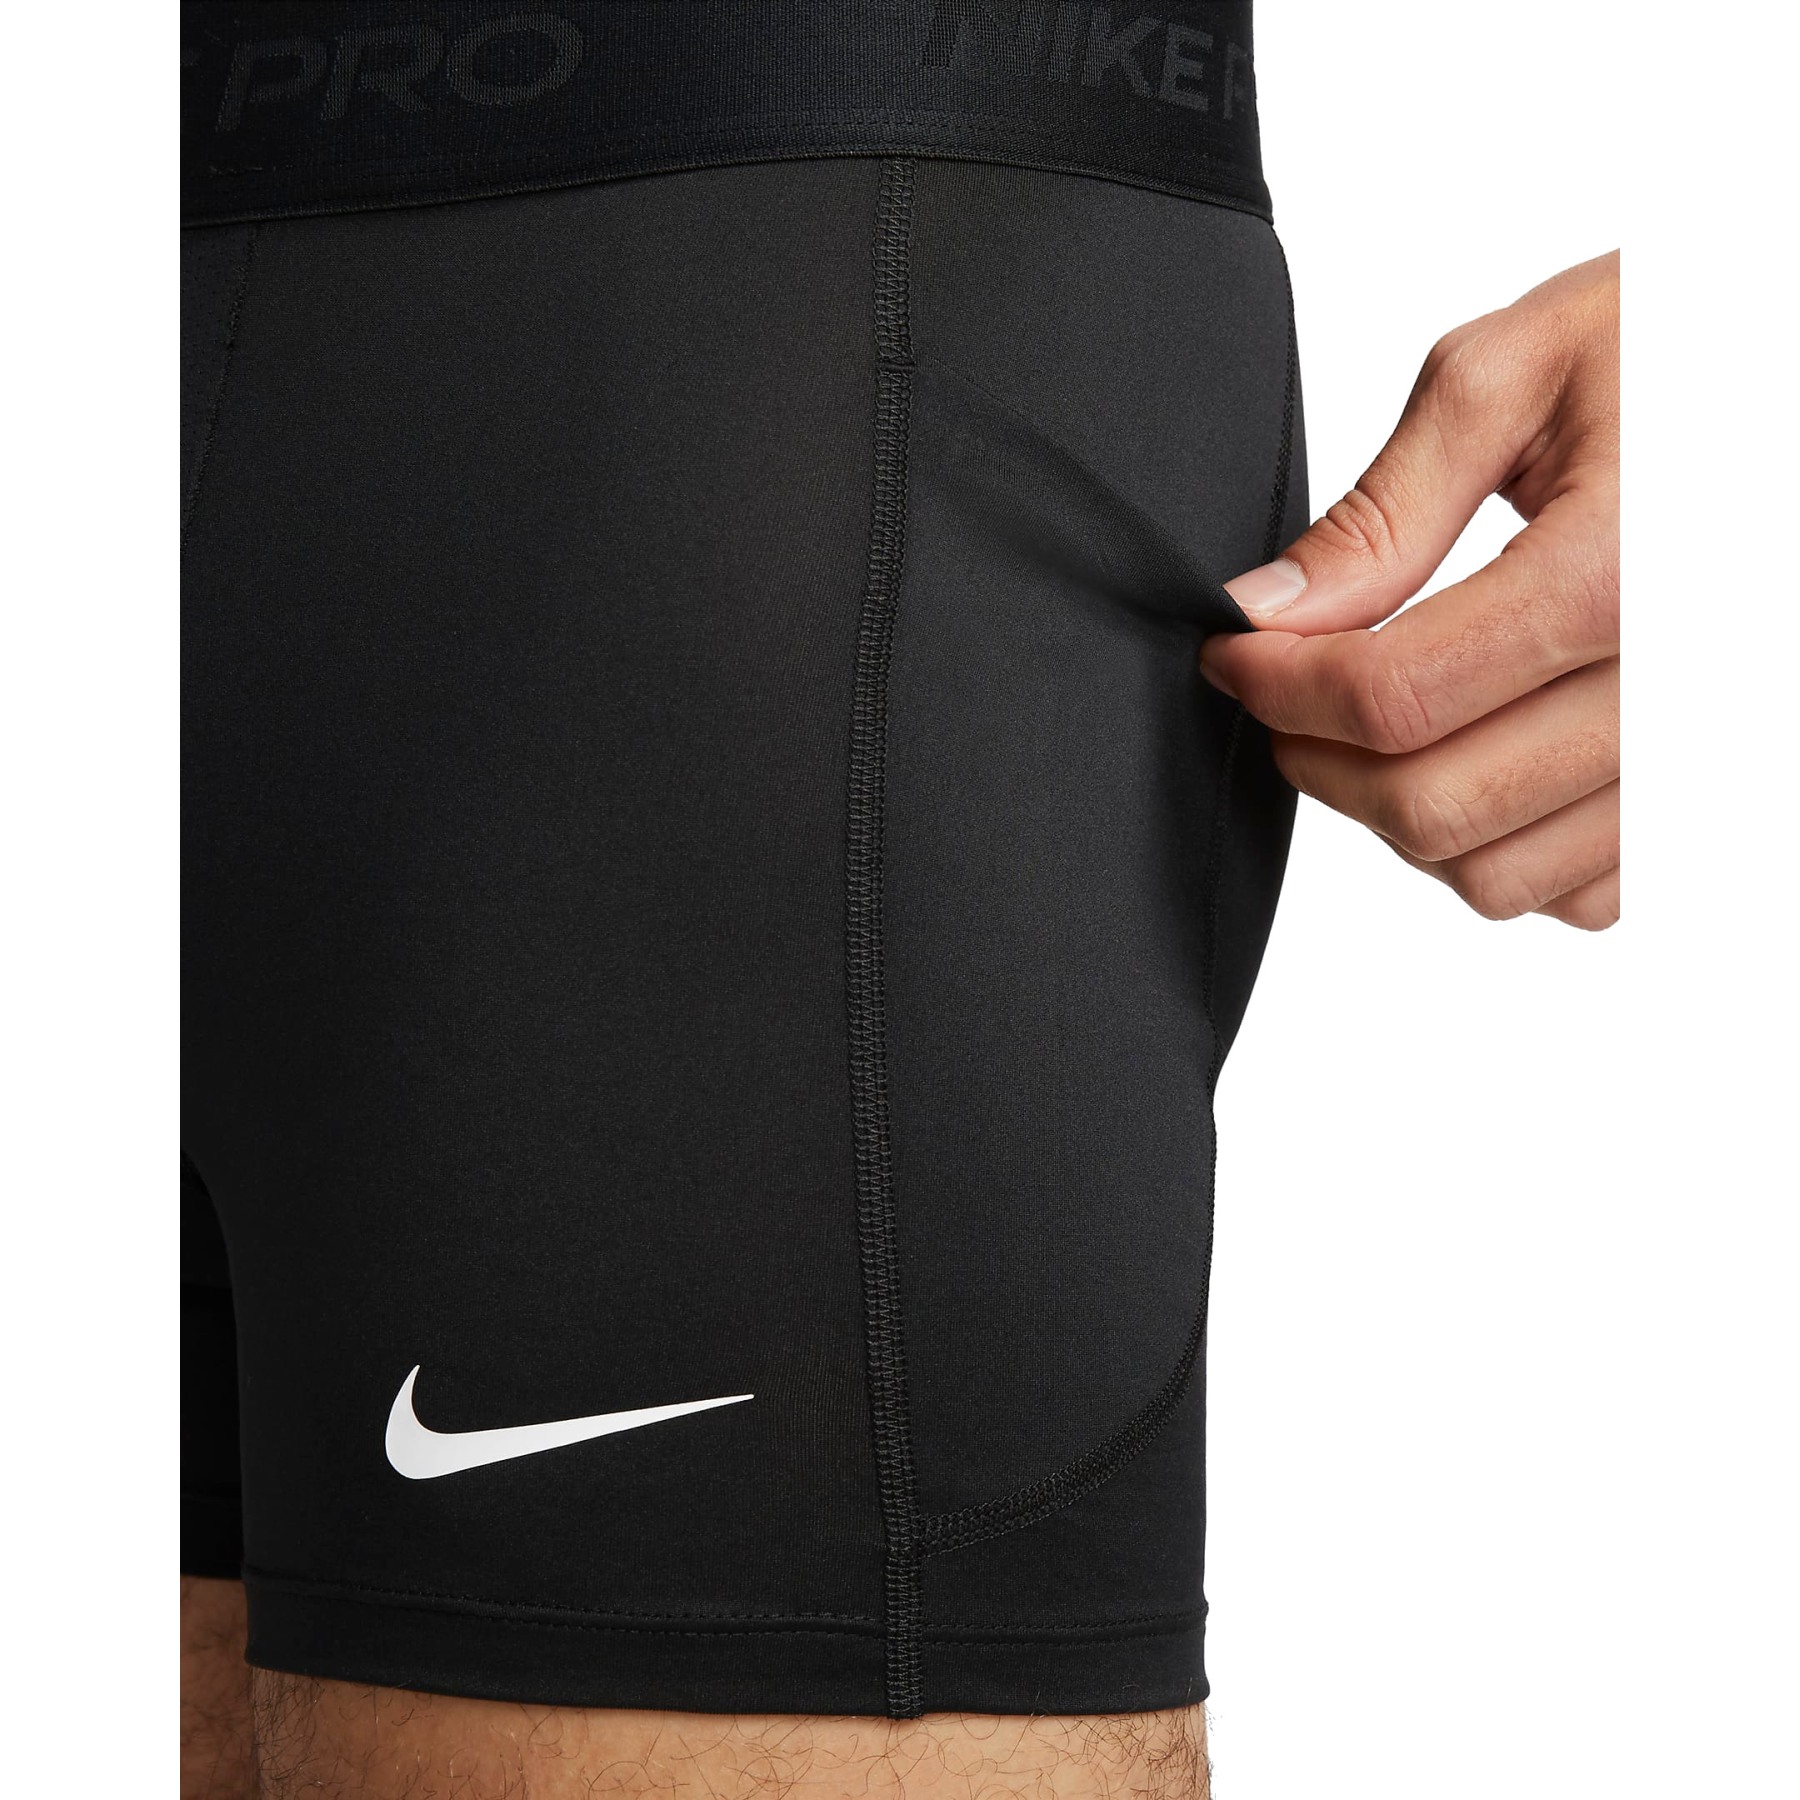 Nike Pro Dri-FIT Short 5 Shorts Men - black/white FD0685-010